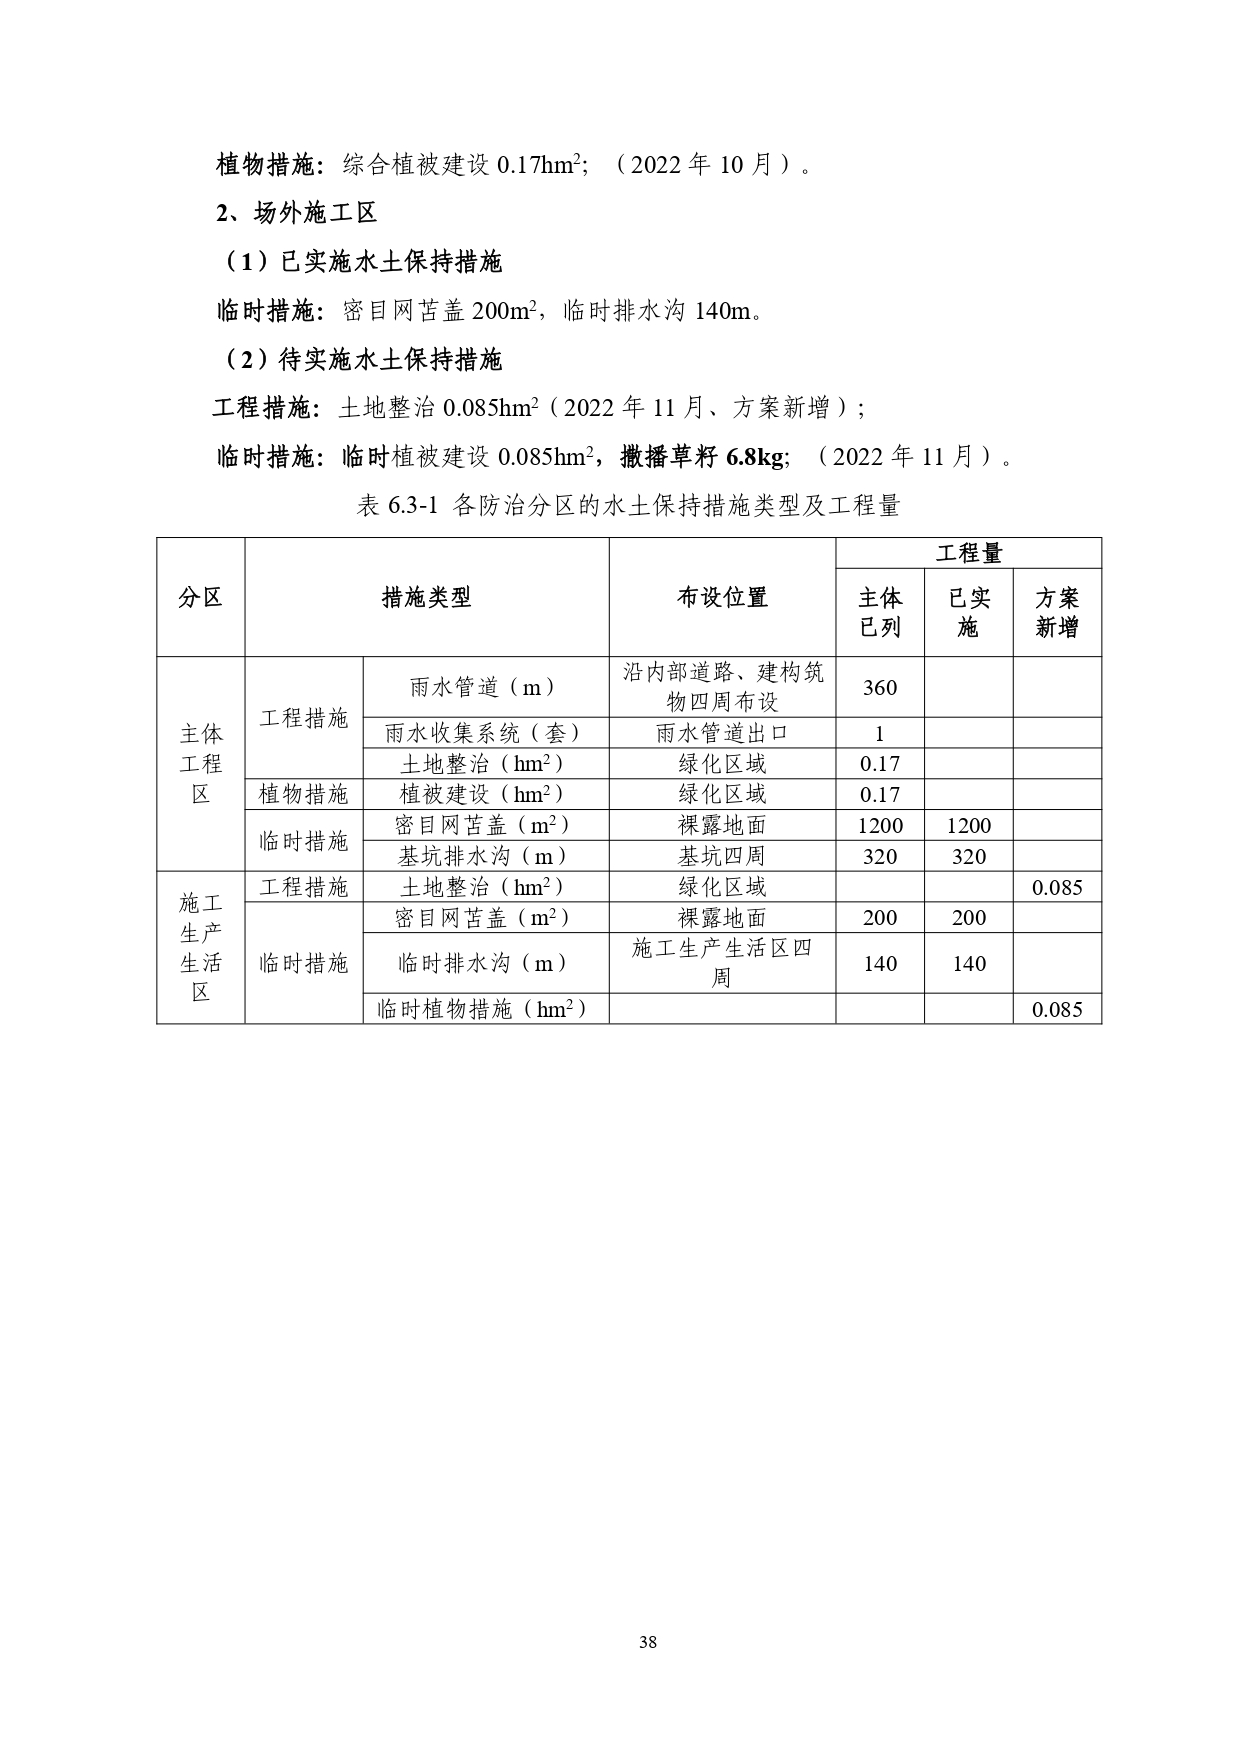 01-中果广场大厦项目水土保持报告表-打印_page-0049.jpg